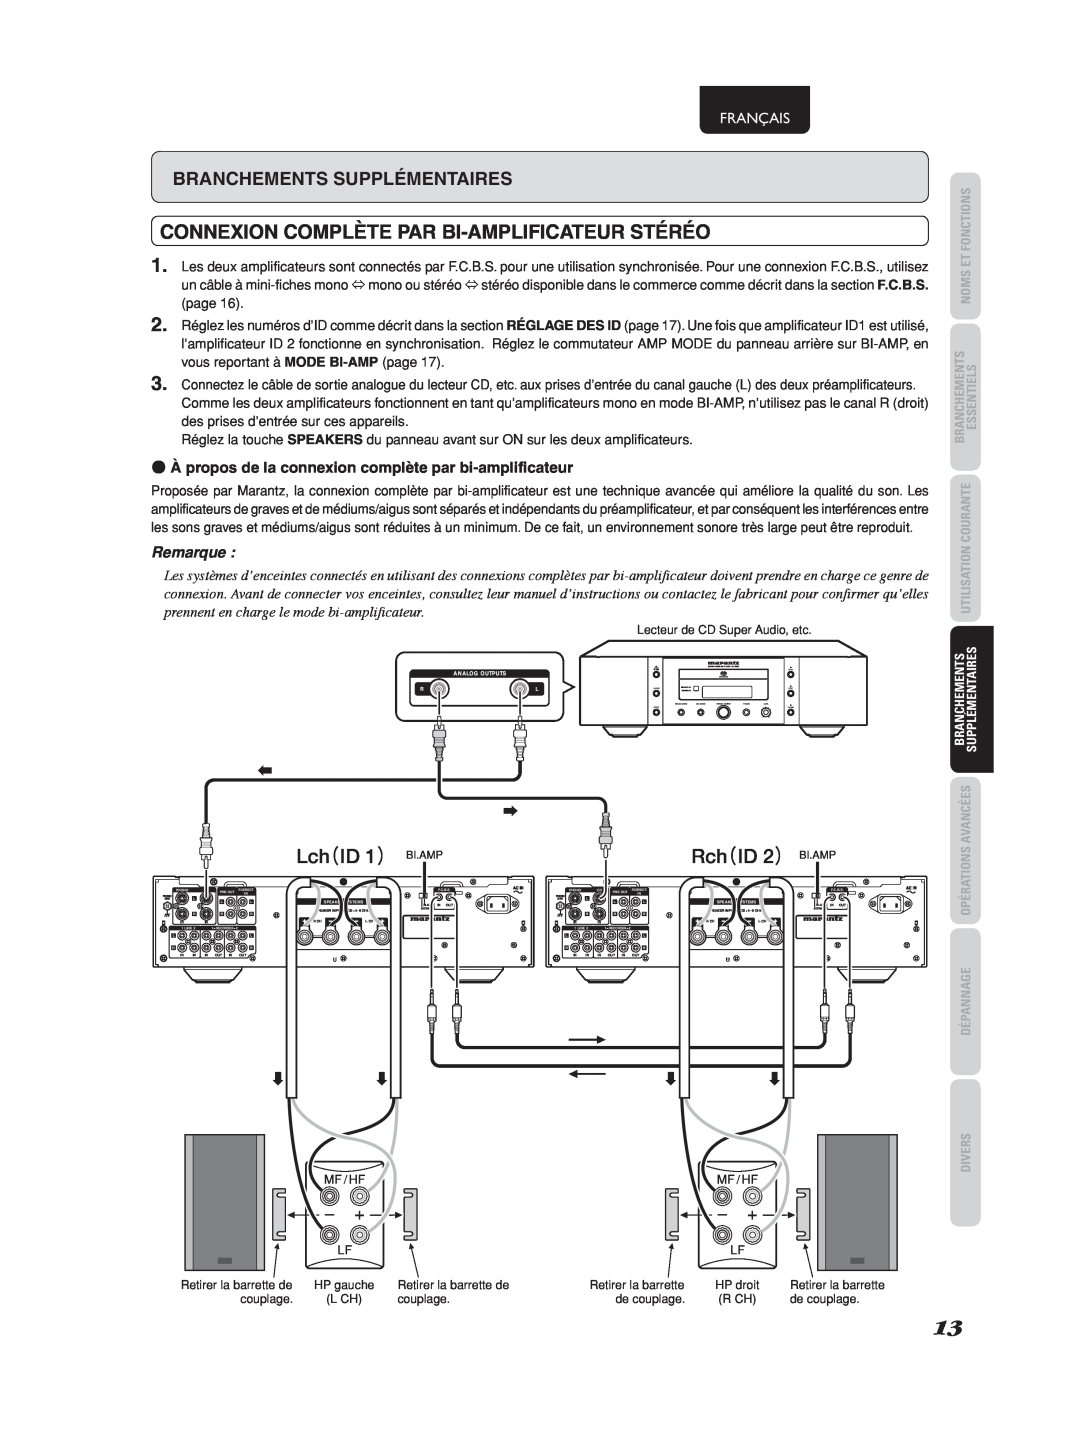 Marantz 541110275035M manual CONNEXION COMPLÈTE PAR BI-AMPLIFICATEURSTÉRÉO 2, Lch（ID 1） BI.AMP, Rch（ID 2） BI.AMP, Français 